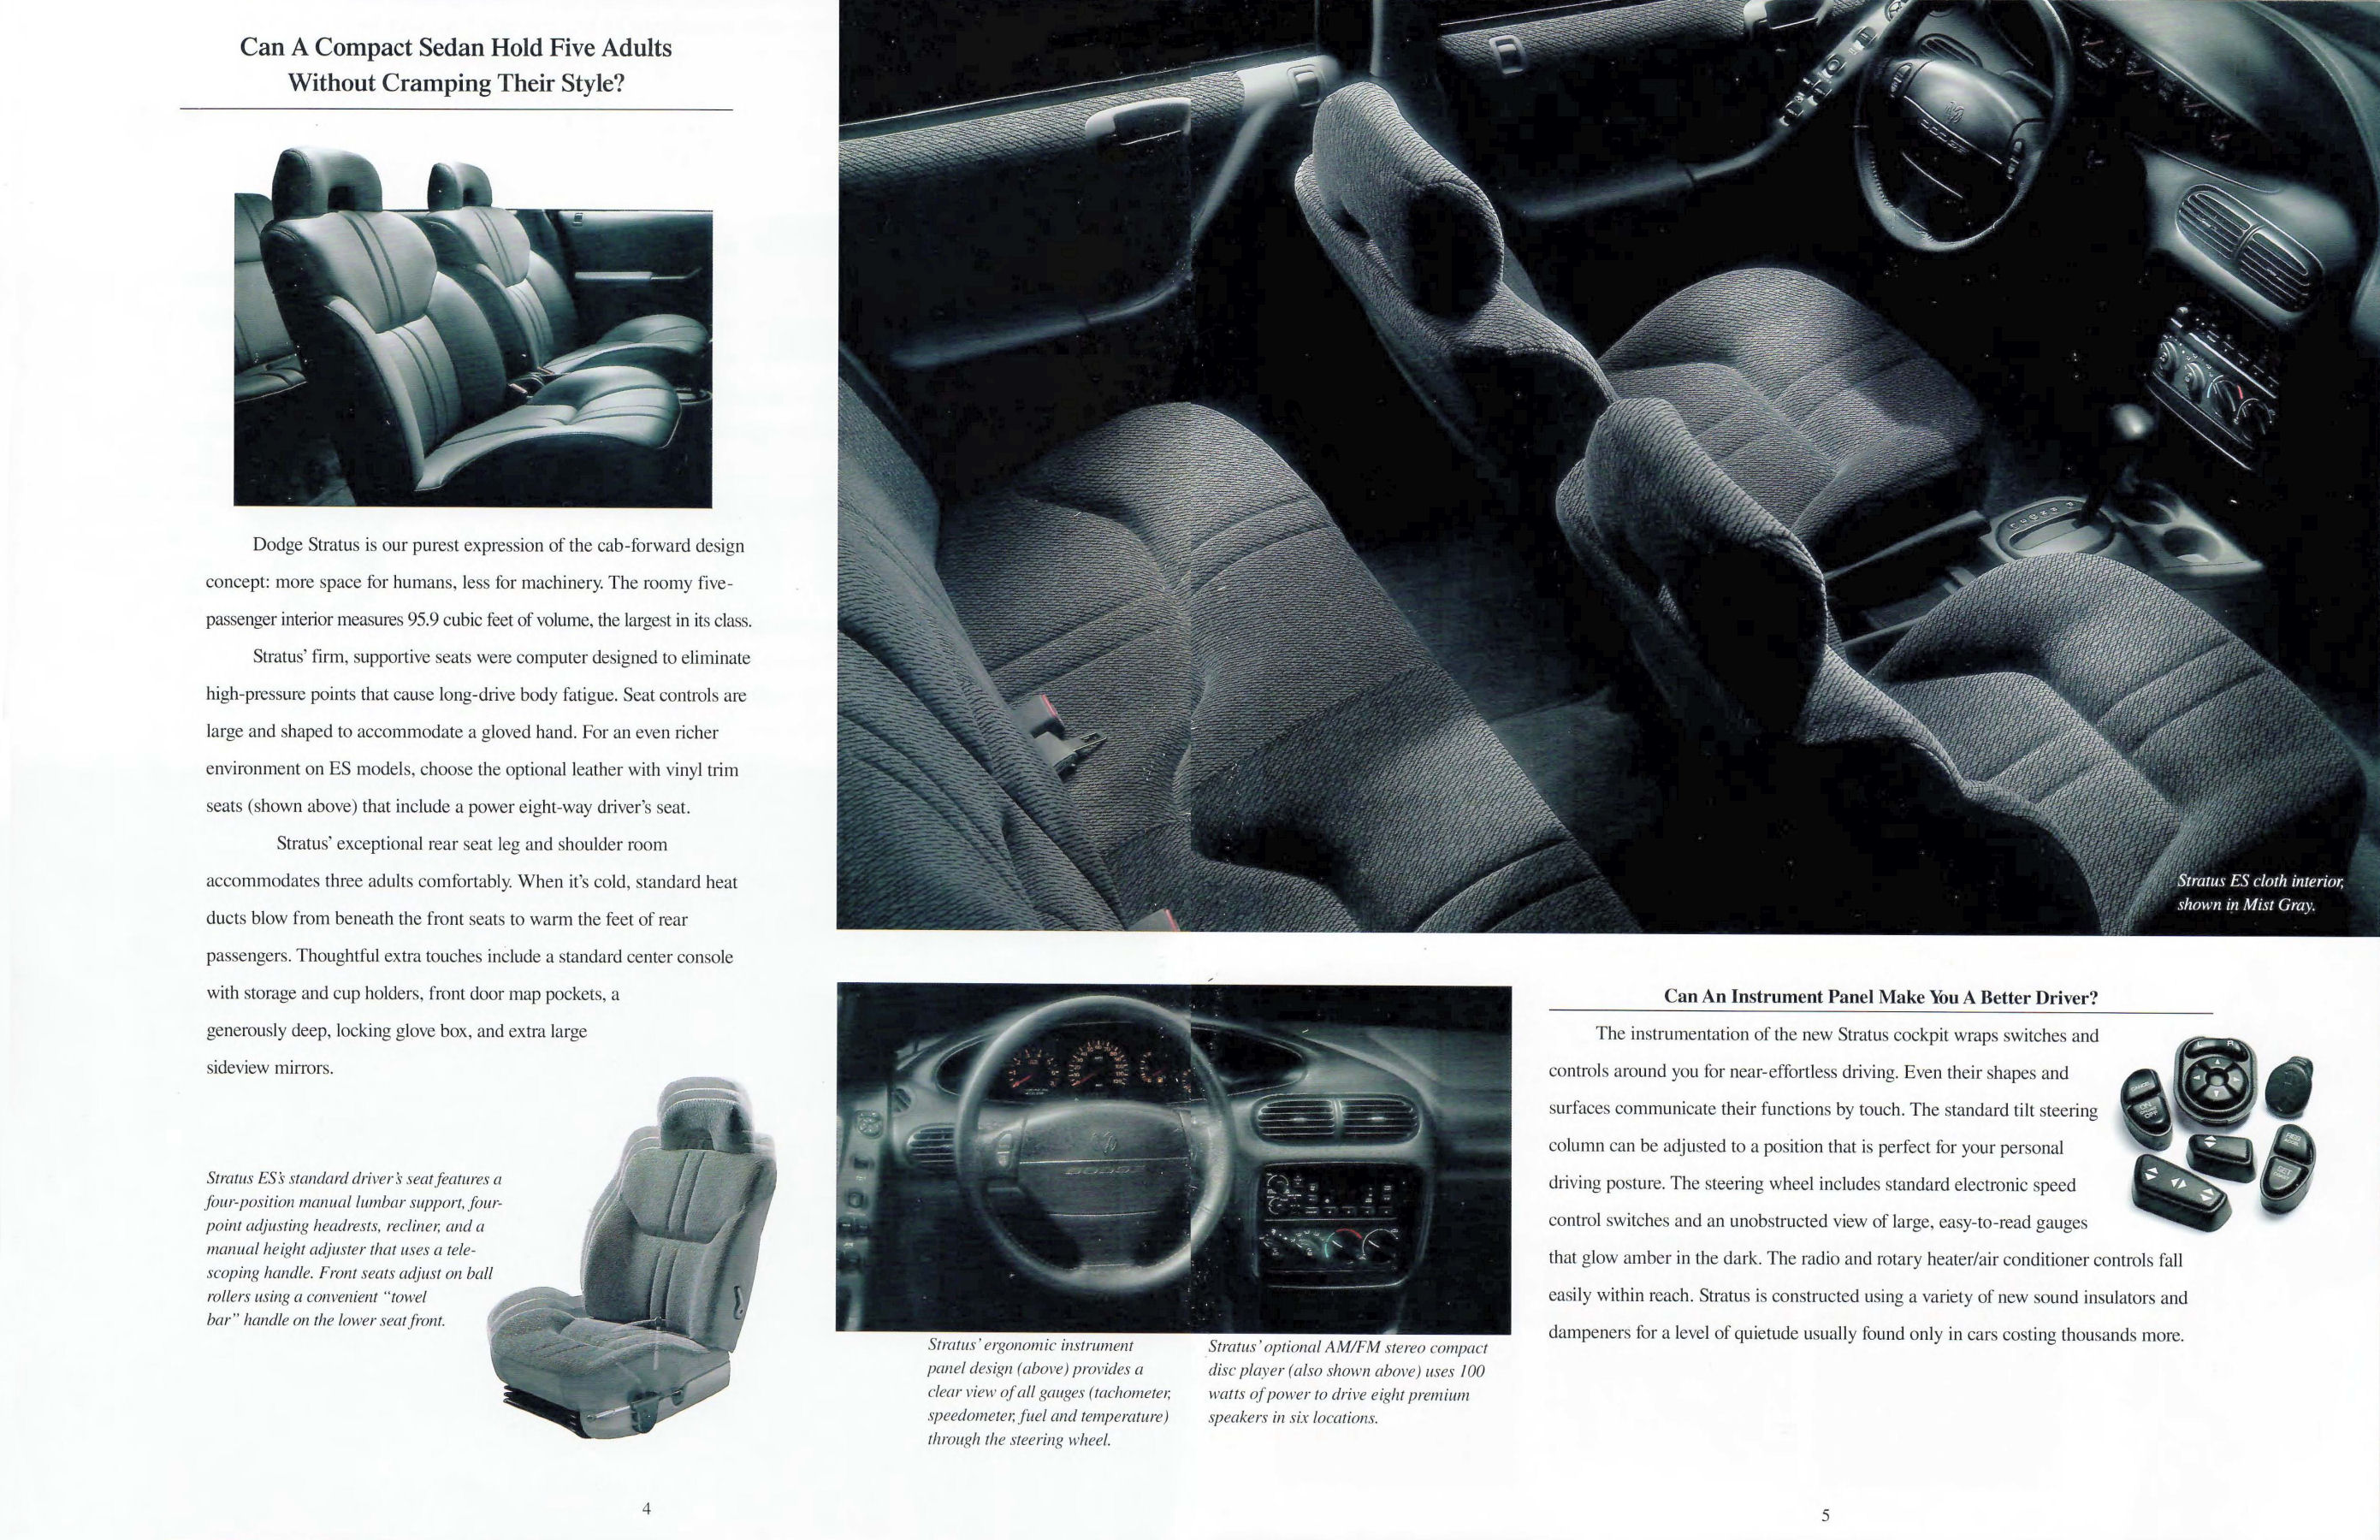 1995 Dodge Stratus-04-05